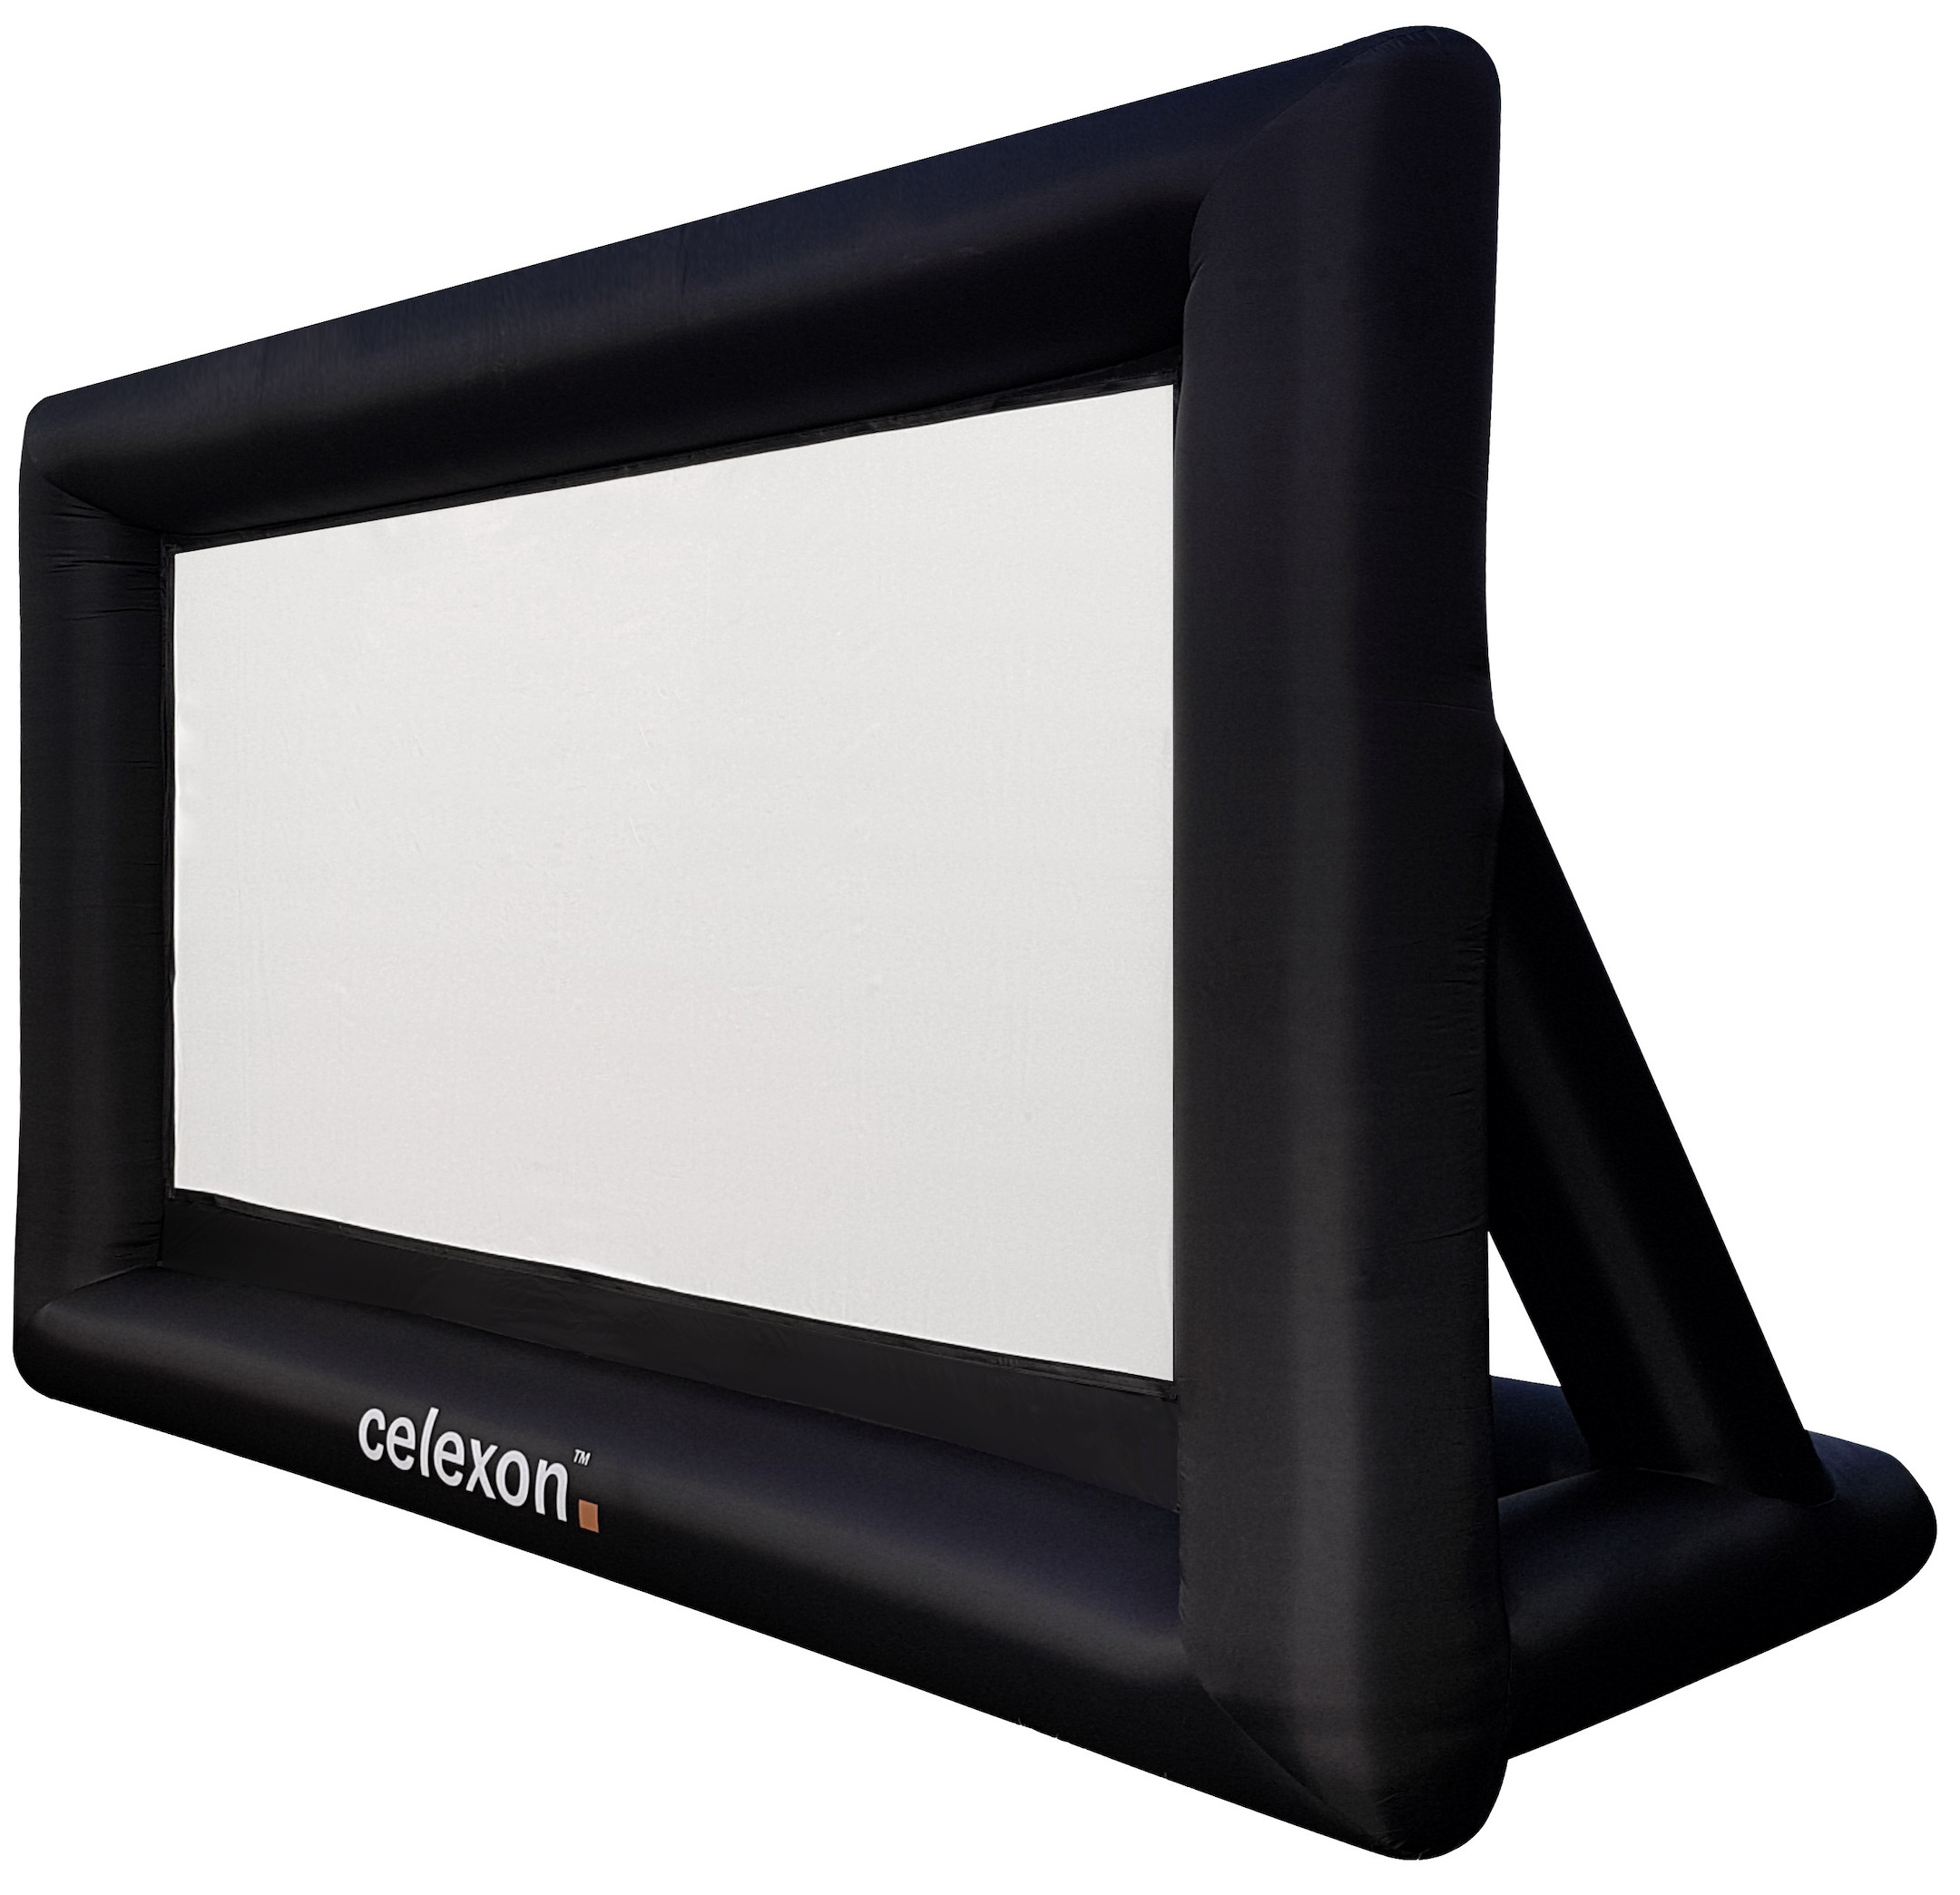 celexon-opblaasbaar-outdoor-projectiescherm-INF200